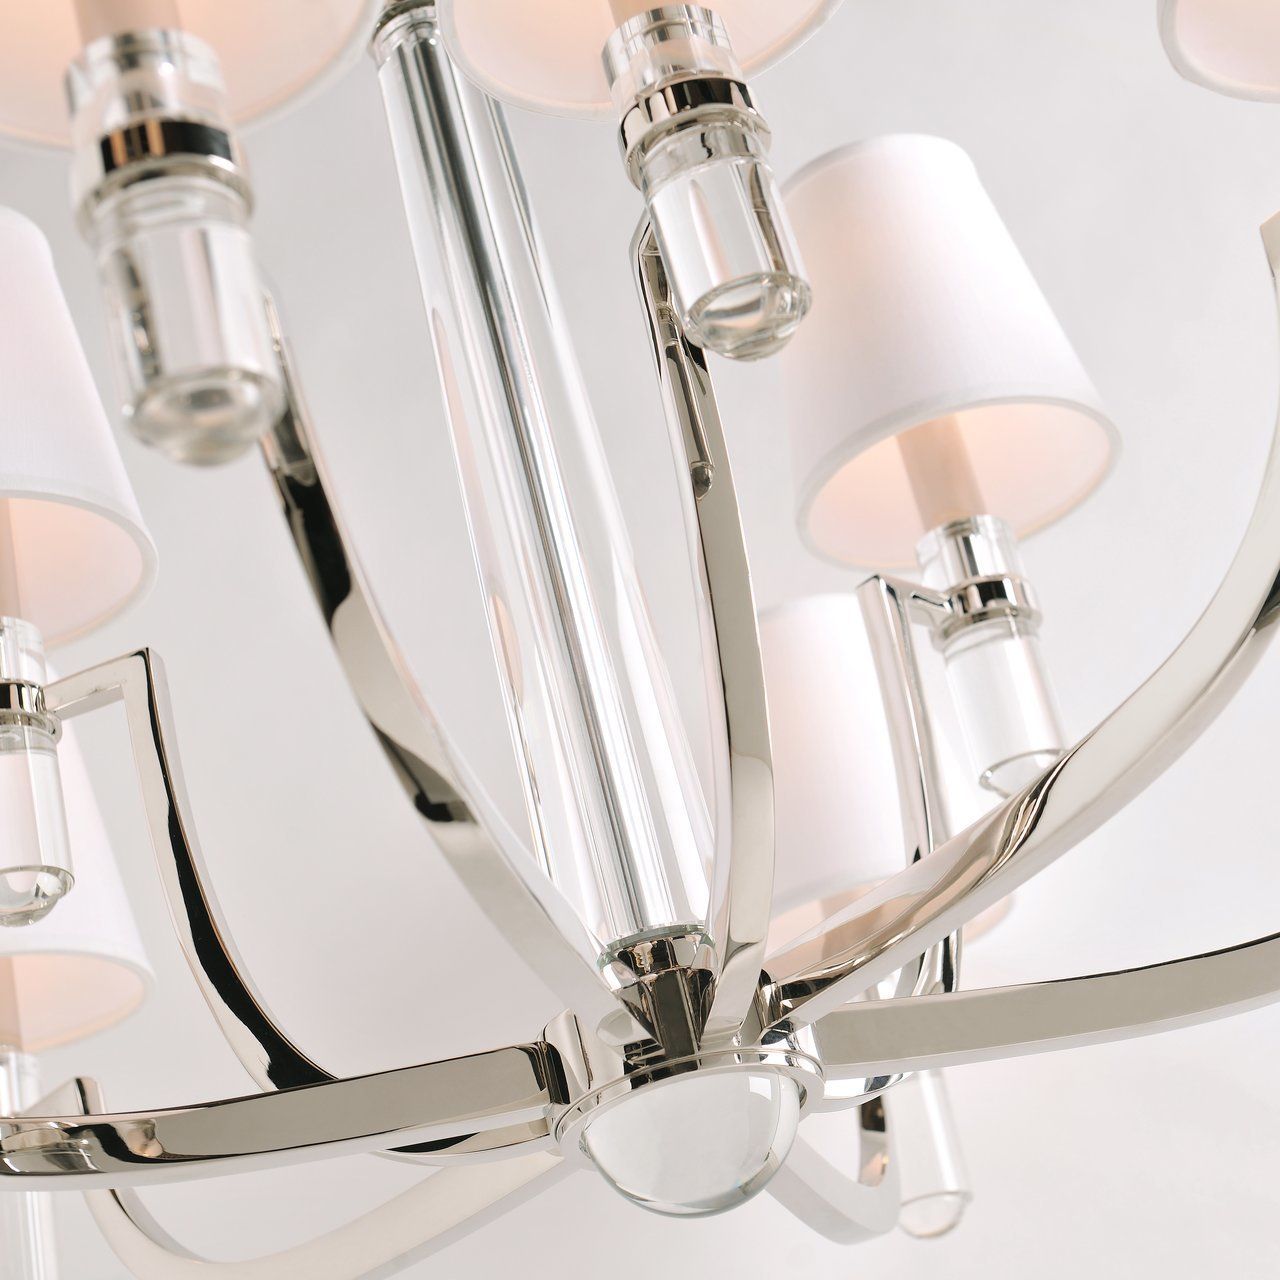 DAYTON chandelier by Romatti